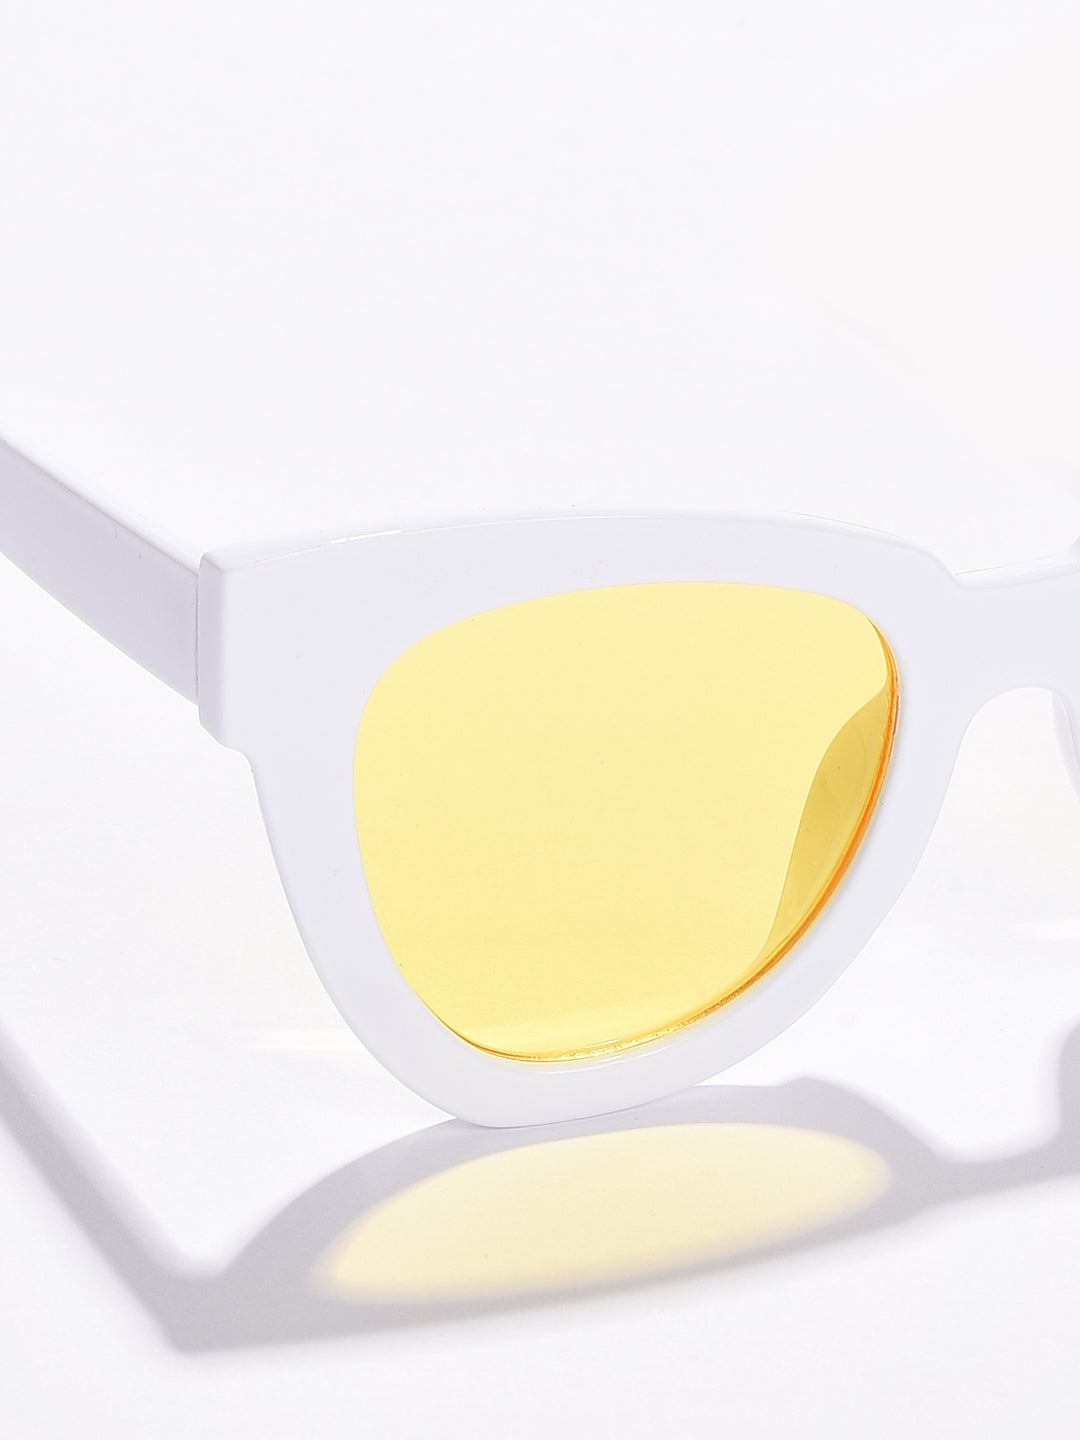 Yellow Lens White Cateye Sunglasses